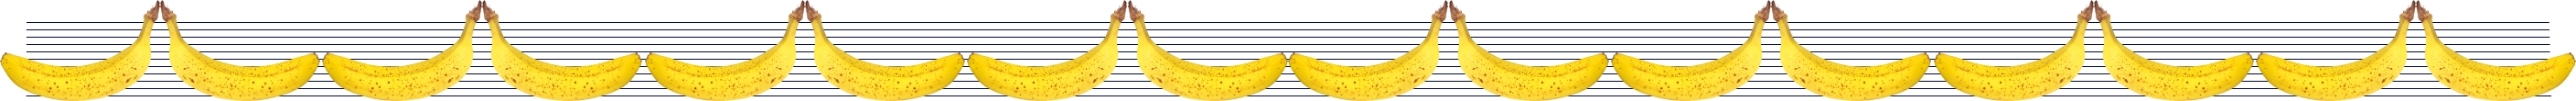 modre banany napřič